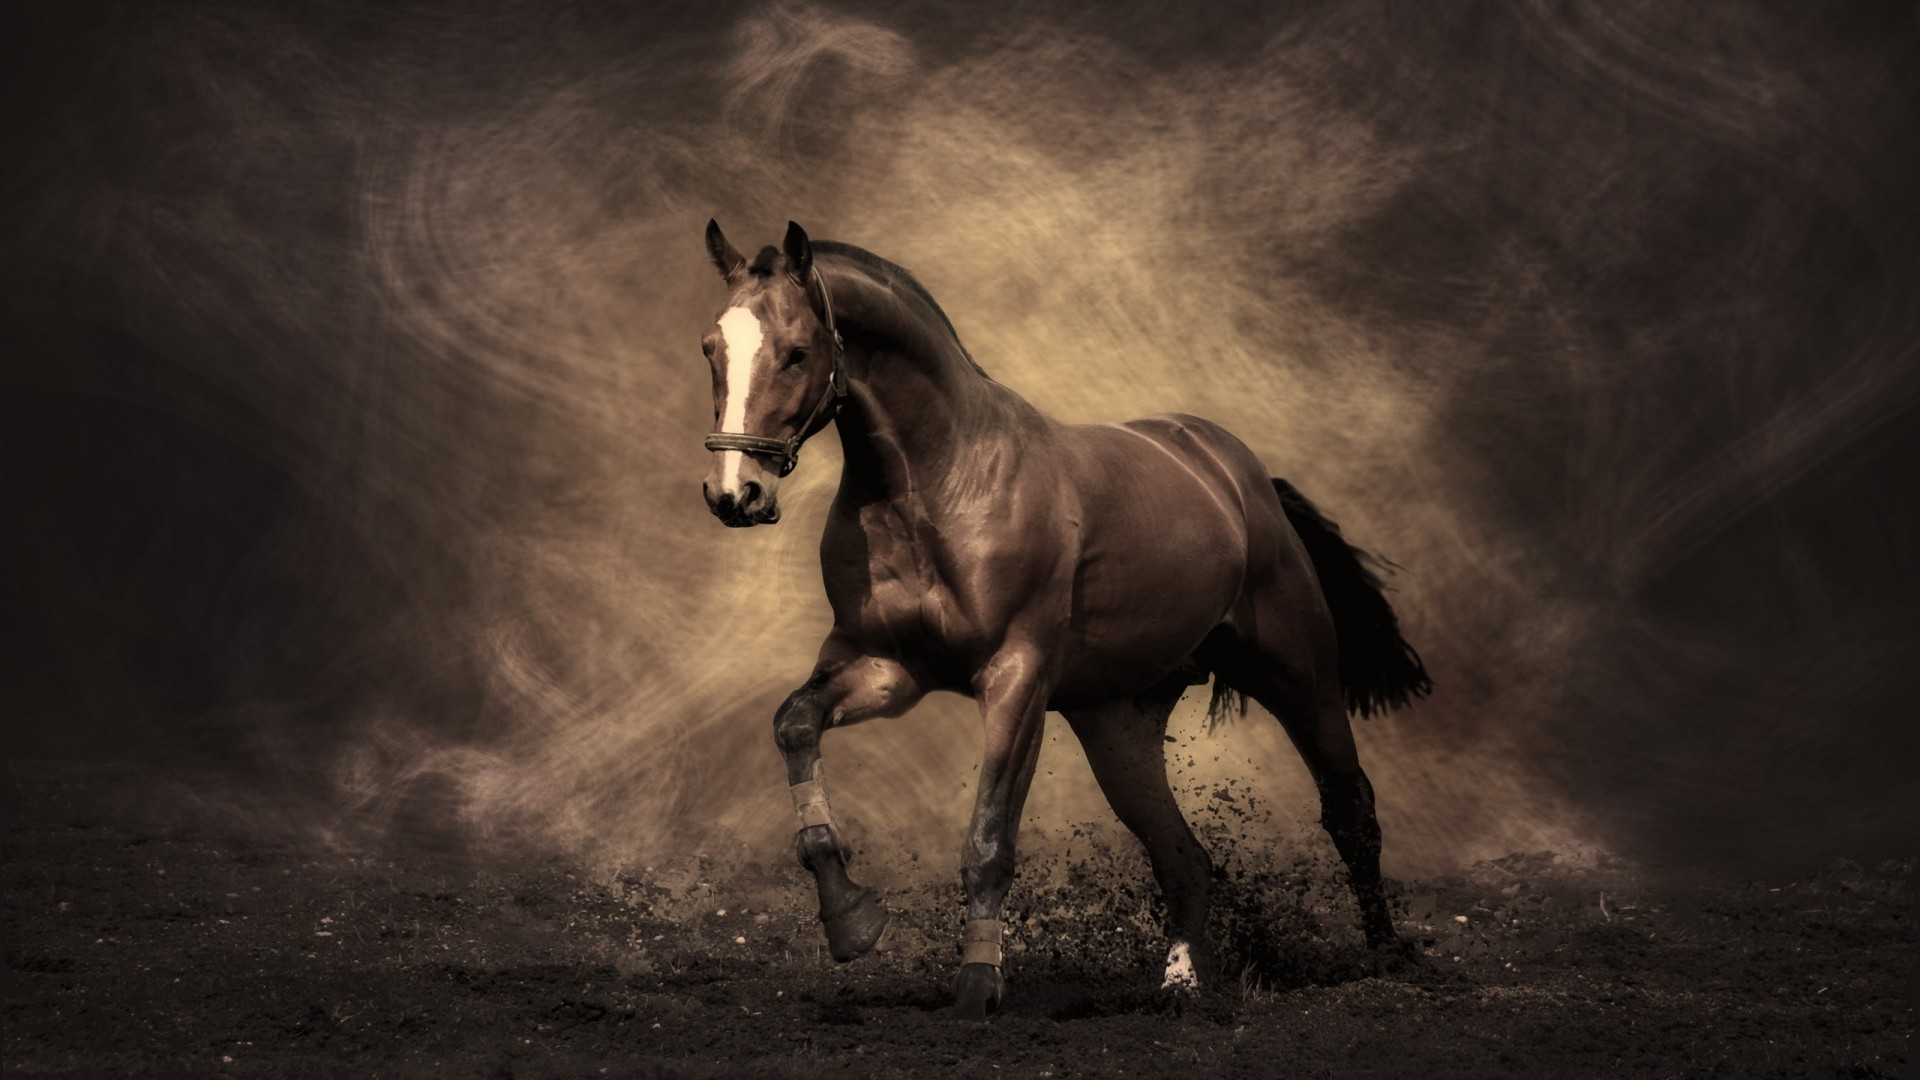 Horse Racing Wallpaper Desktop Image Amp Pictures Becuo